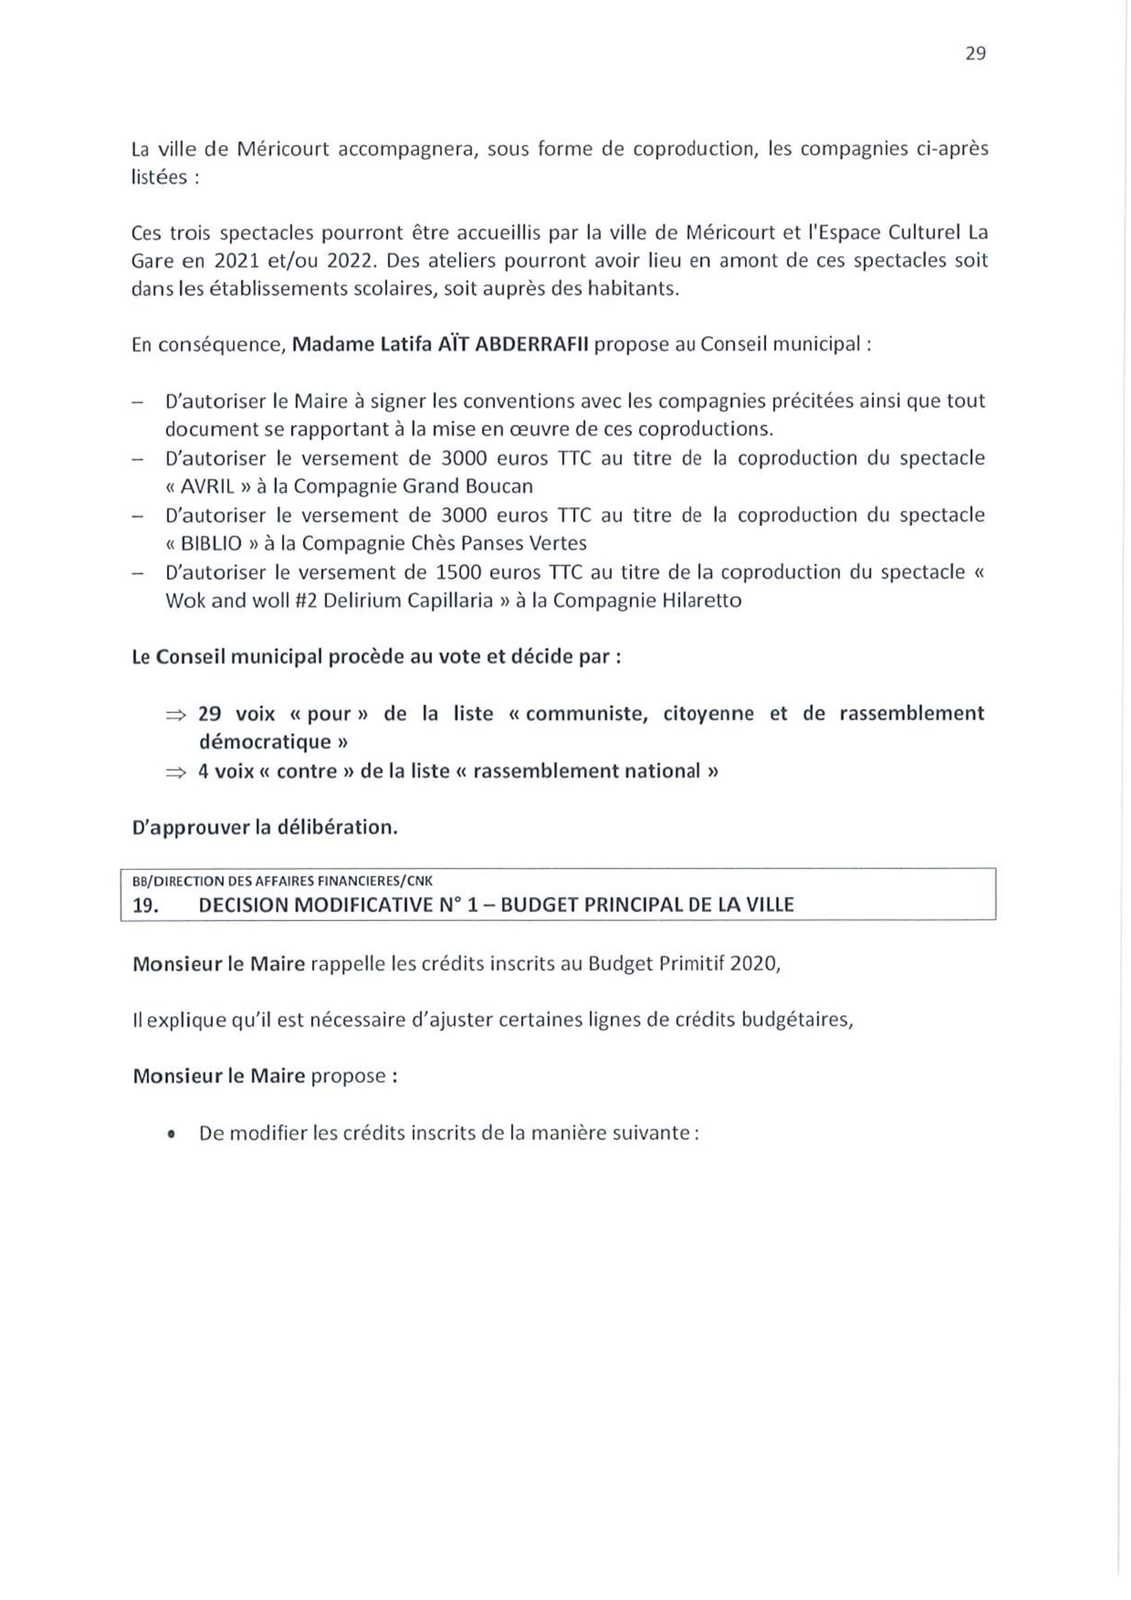 Conseil municipal de Méricourt du 23 septembre 2020 : le compte-rendu officiel est en ligne 